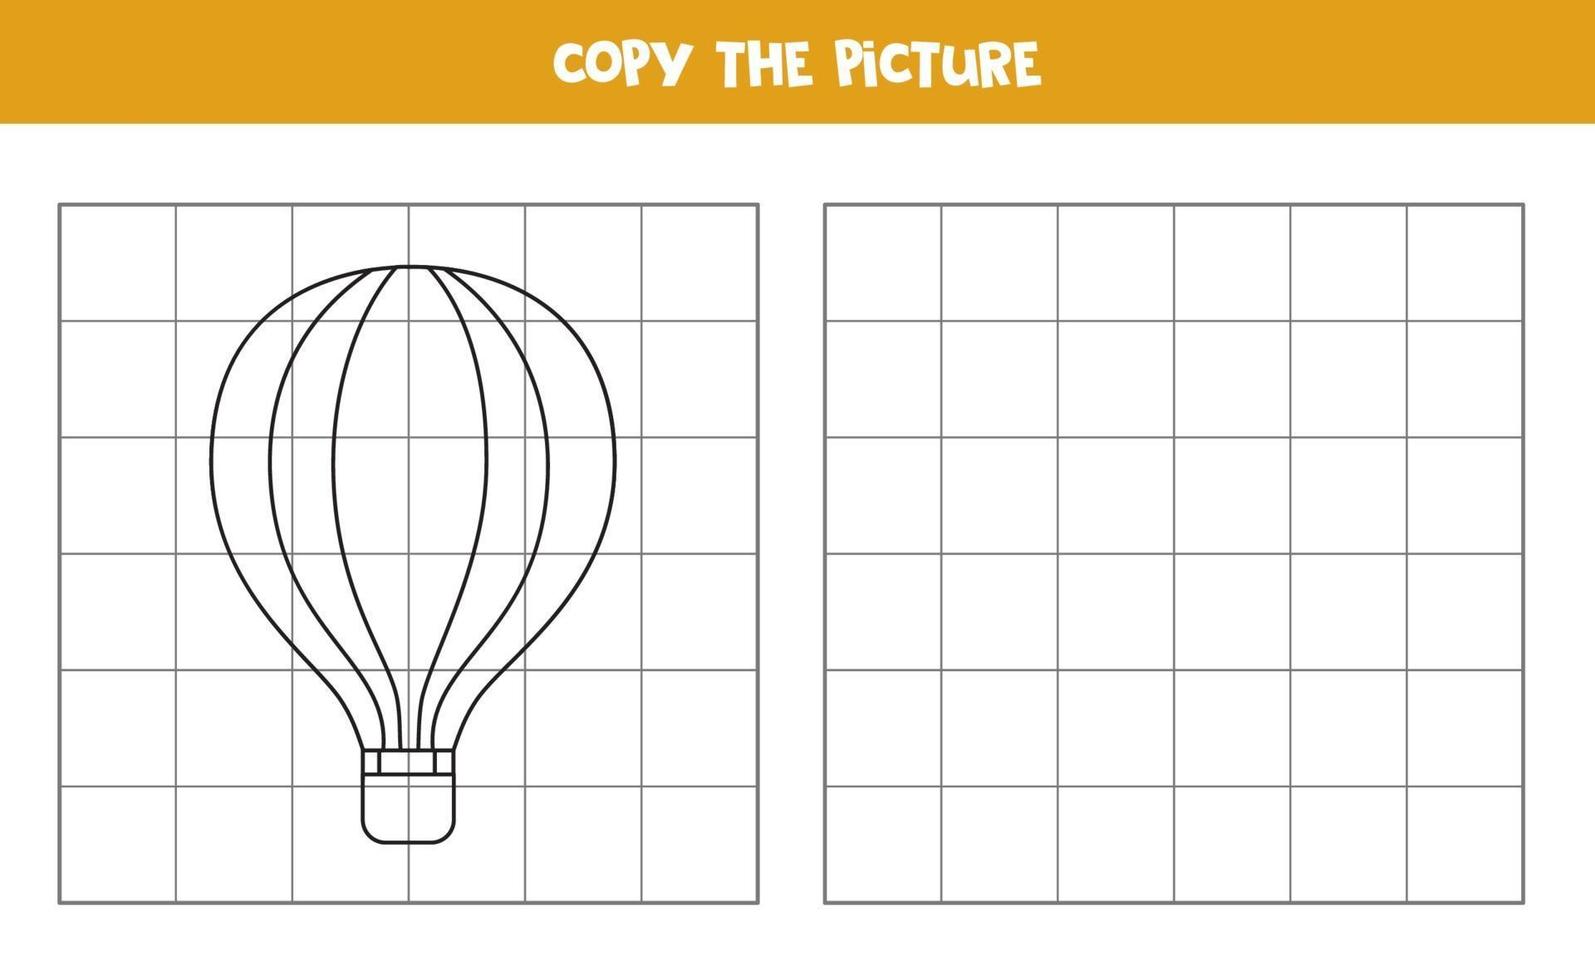 Copie la imagen del globo aerostático. juego de lógica para niños. vector